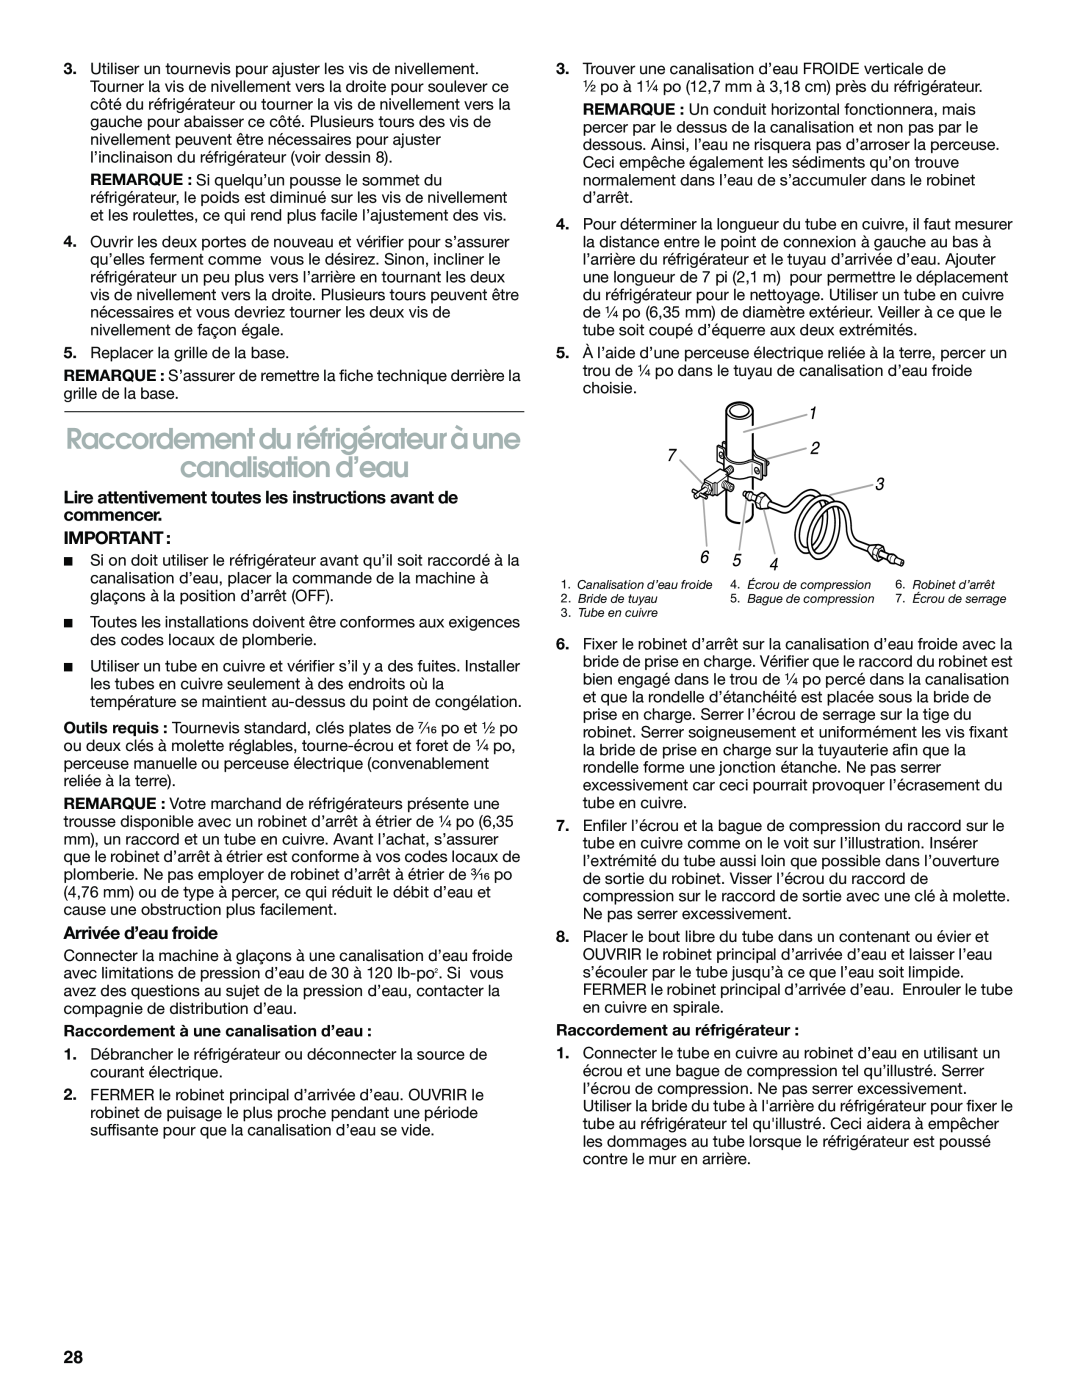 Whirlpool RS22AQXGN03 manual Raccordement du réfrigérateur à une canalisation d’eau, Arrivée d’eau froide 